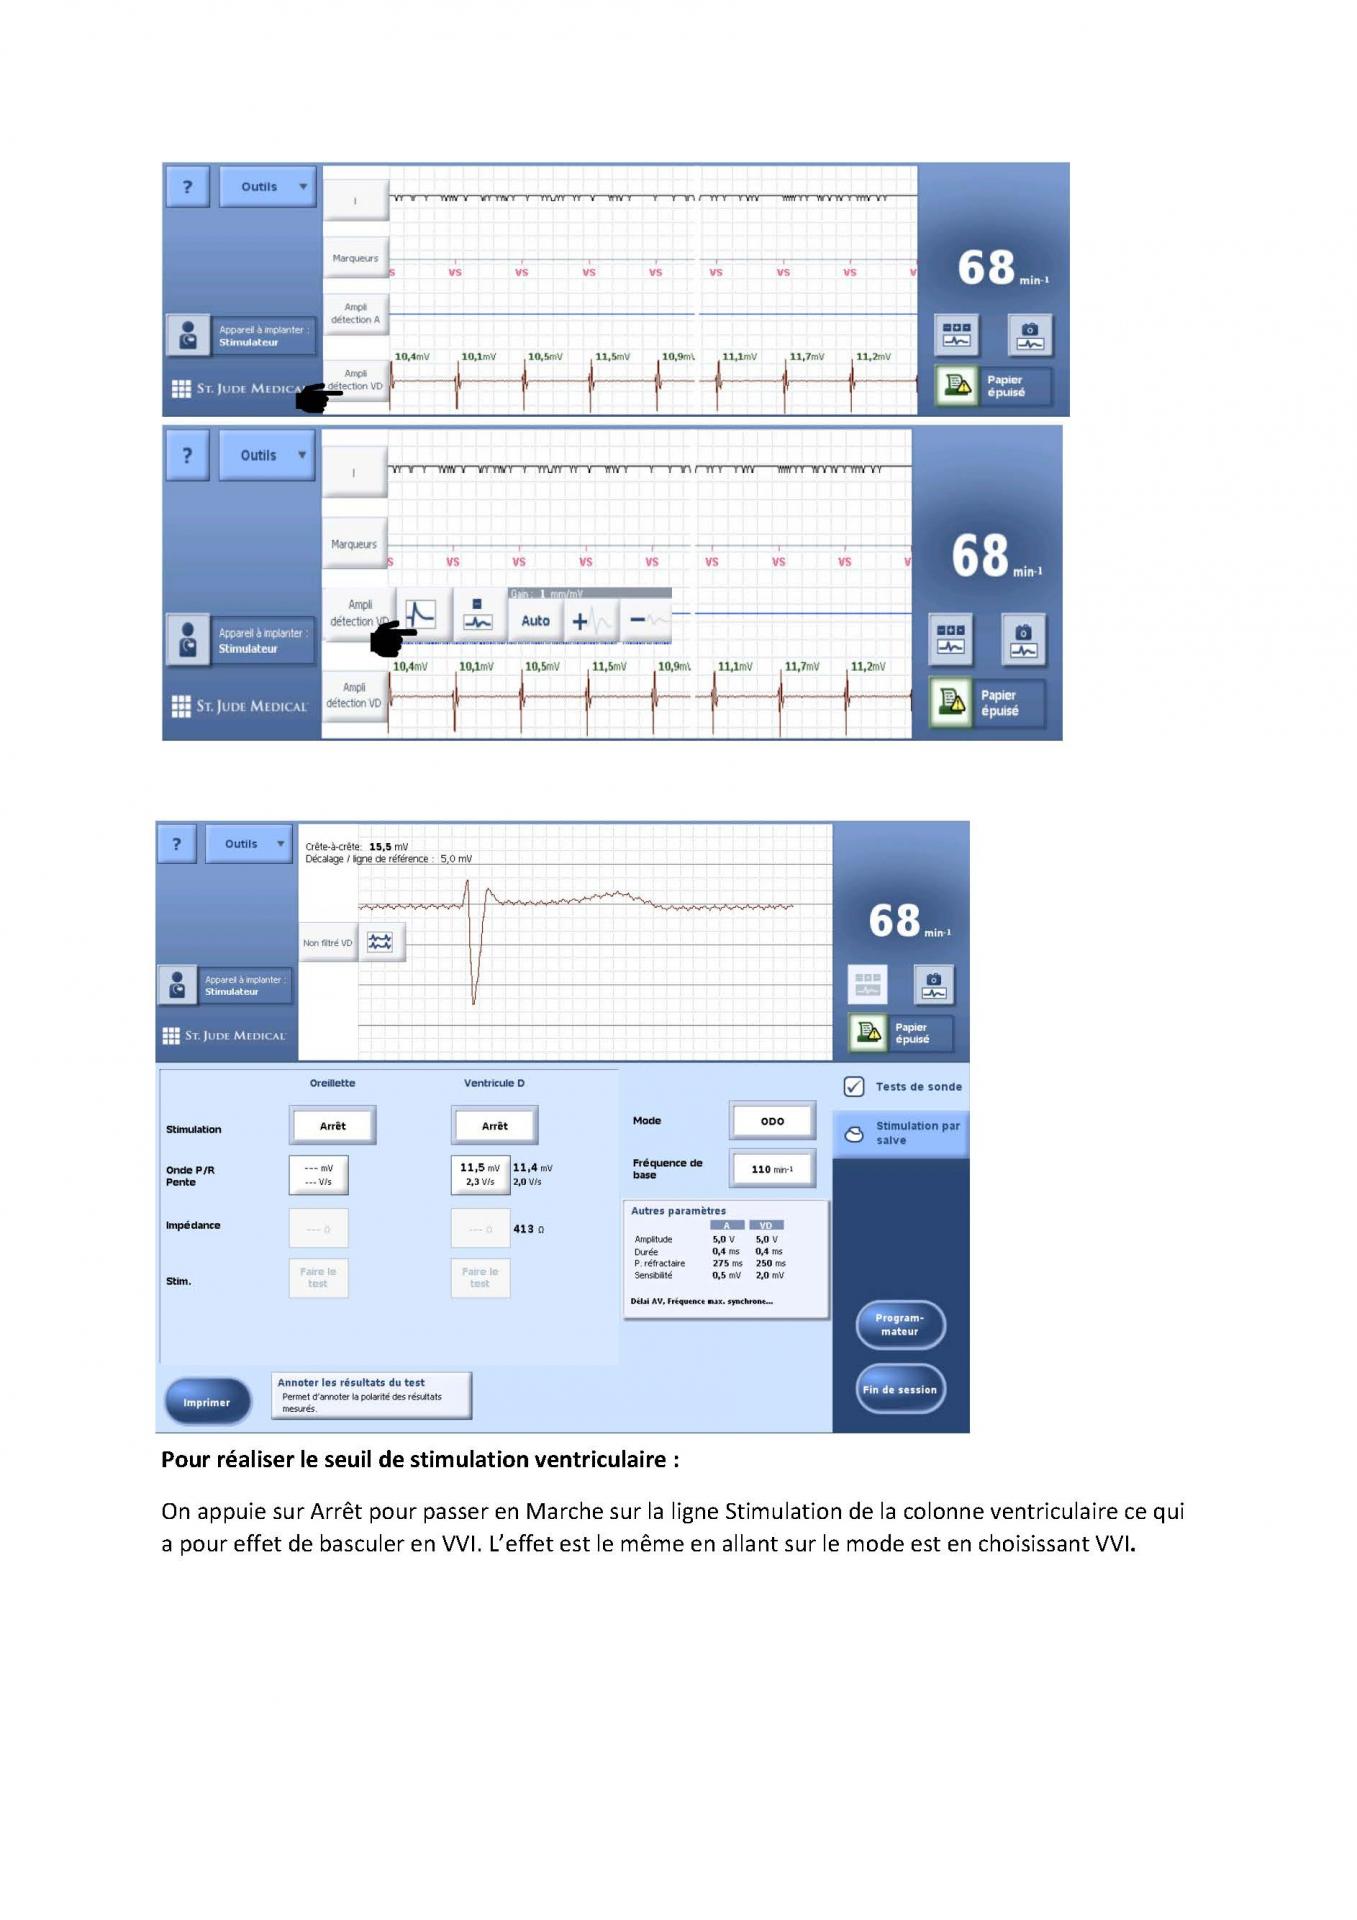 2 2 1 2 fonctionnement des appareils en stimulation cardiaque j les specificites des labos page 03